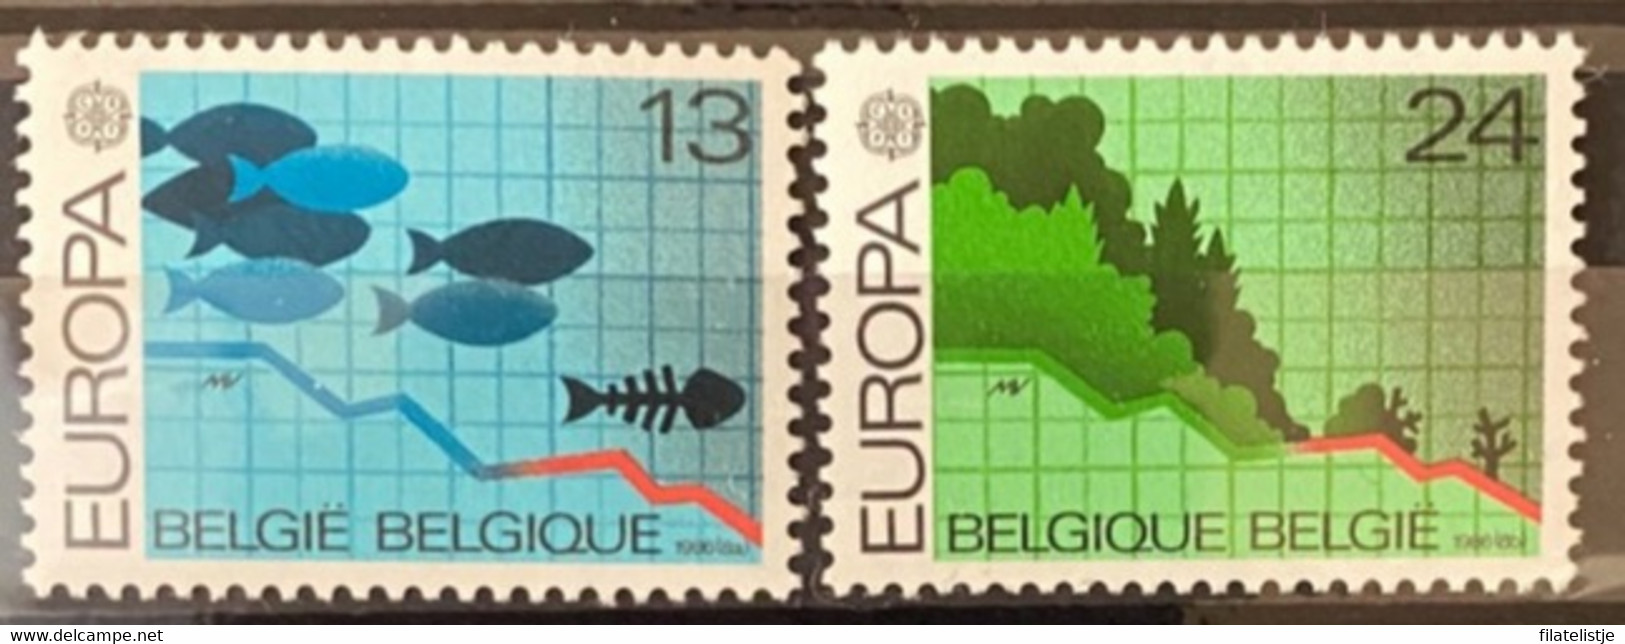 België Europa-cept MNH*** - 1986